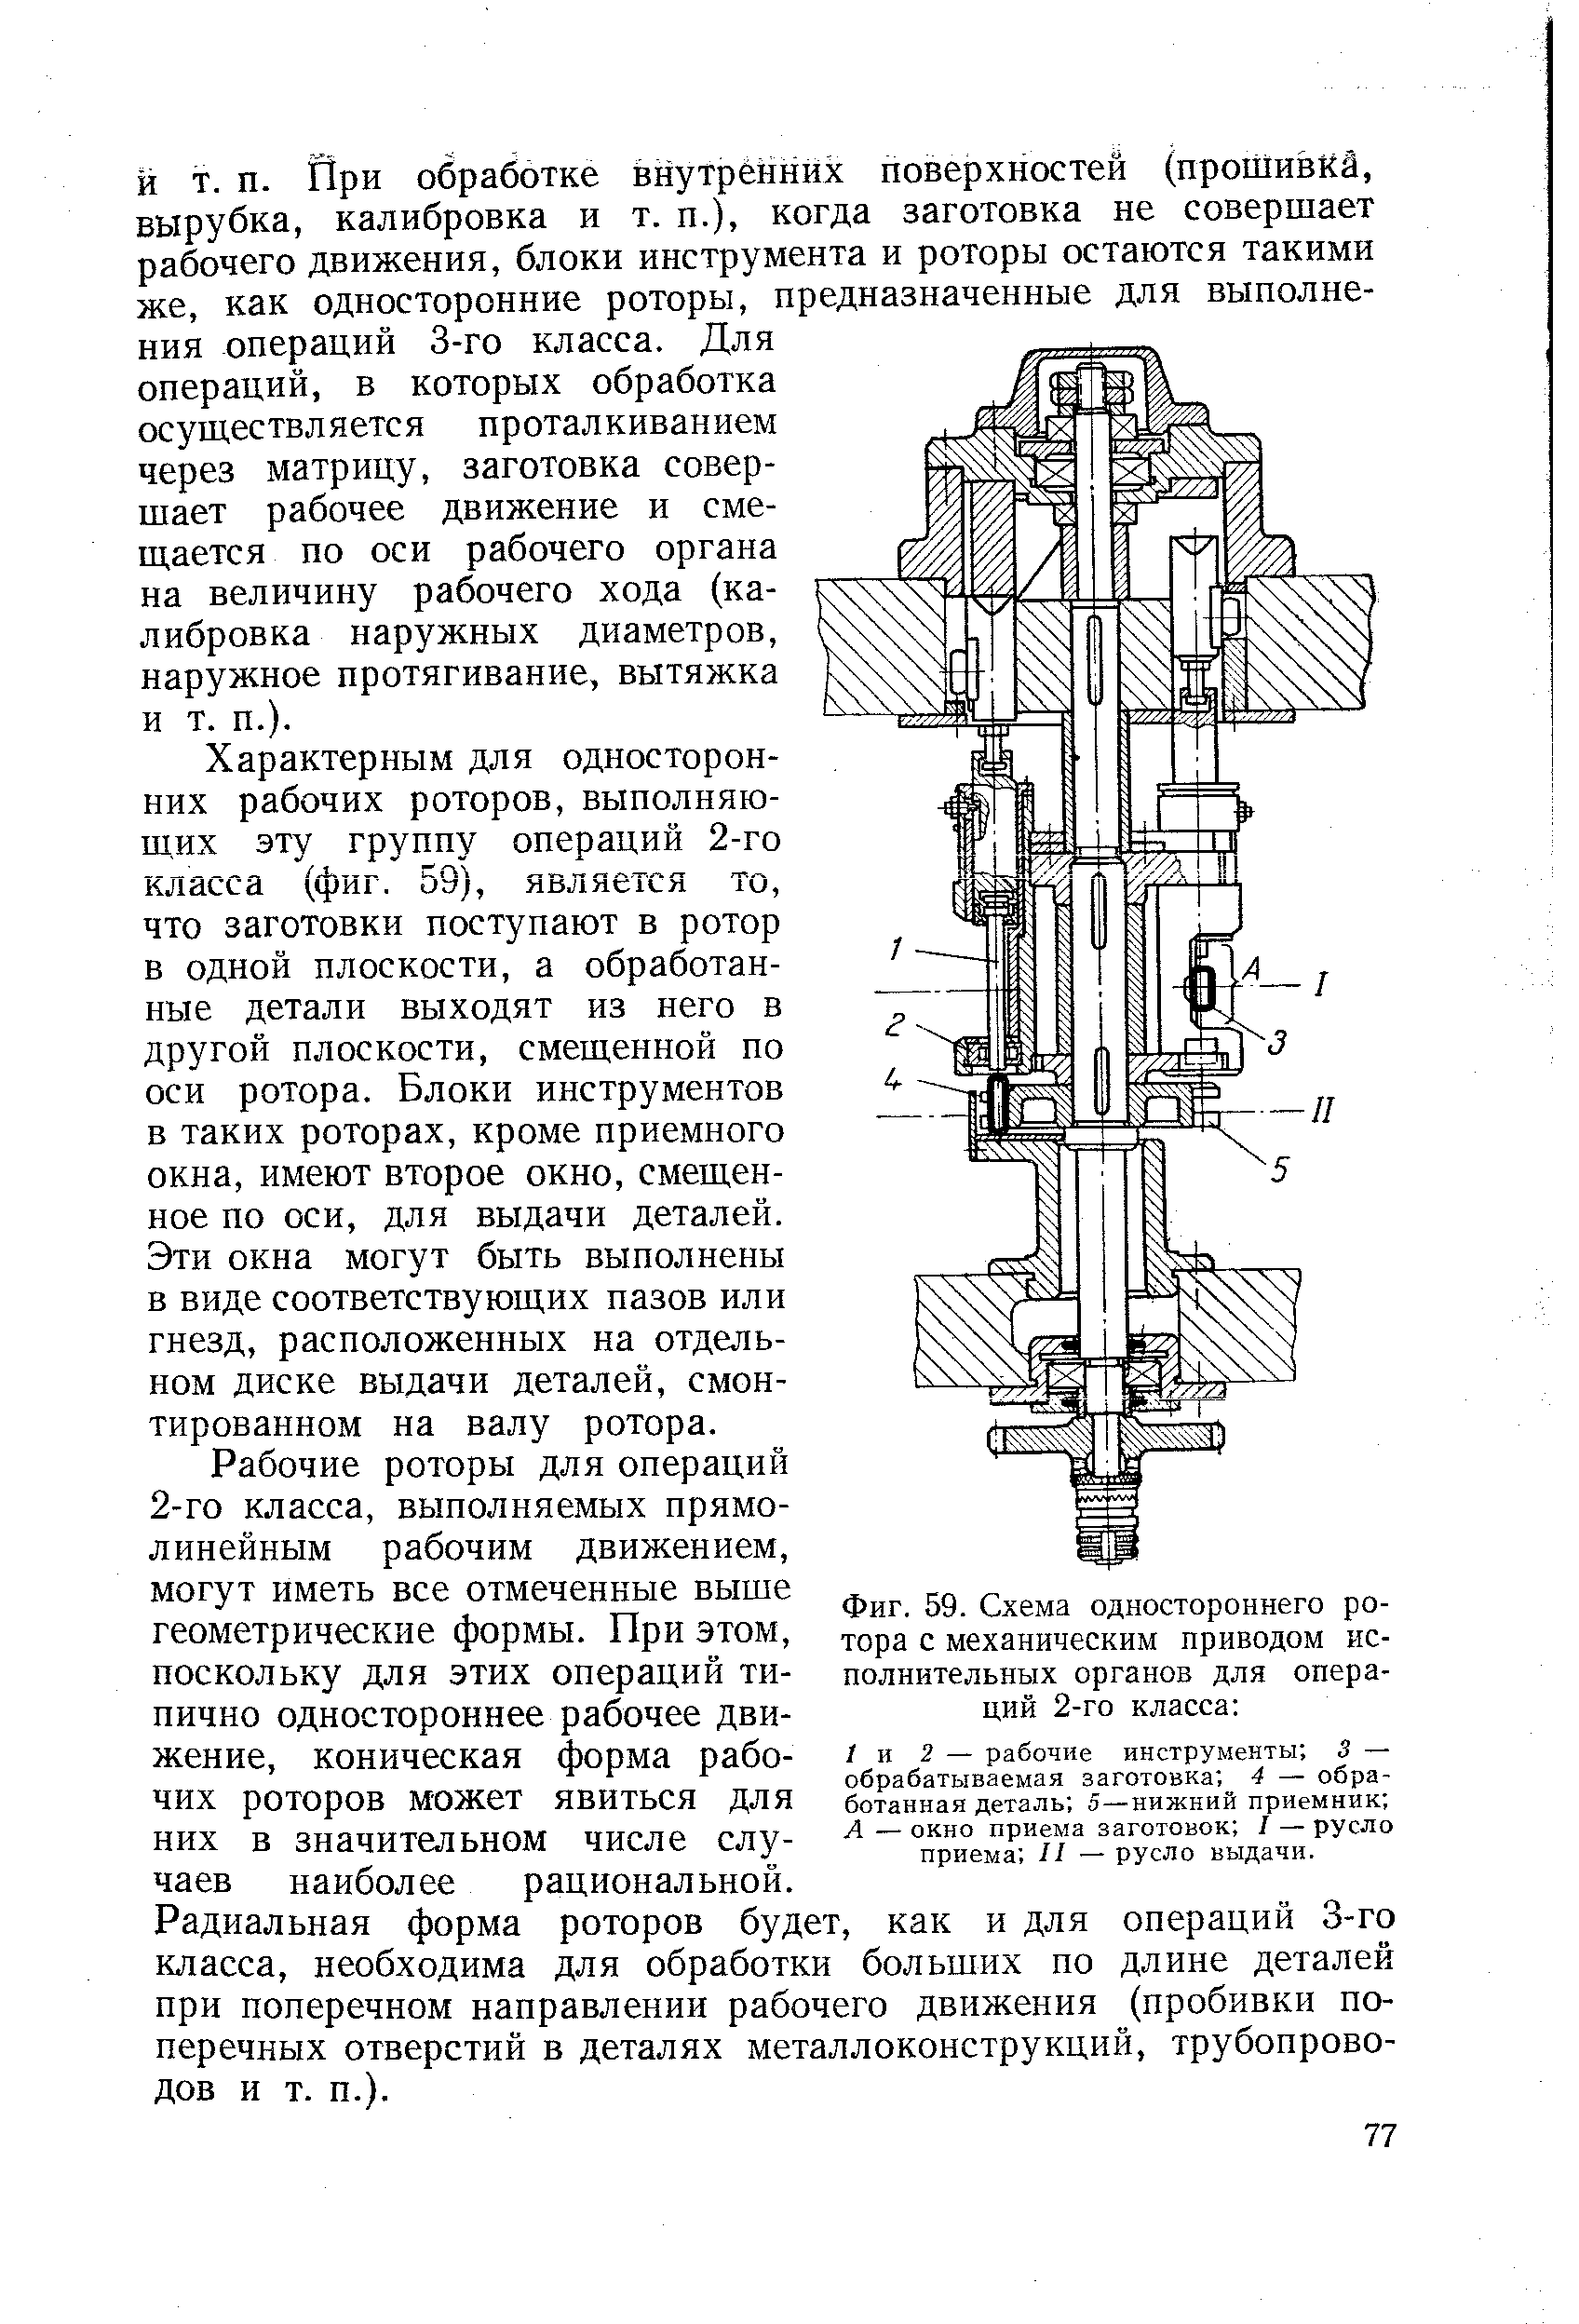 Фиг. 59. Схема одностороннего ротора с механическим приводом исполнительных органов для операций 2-го класса 
